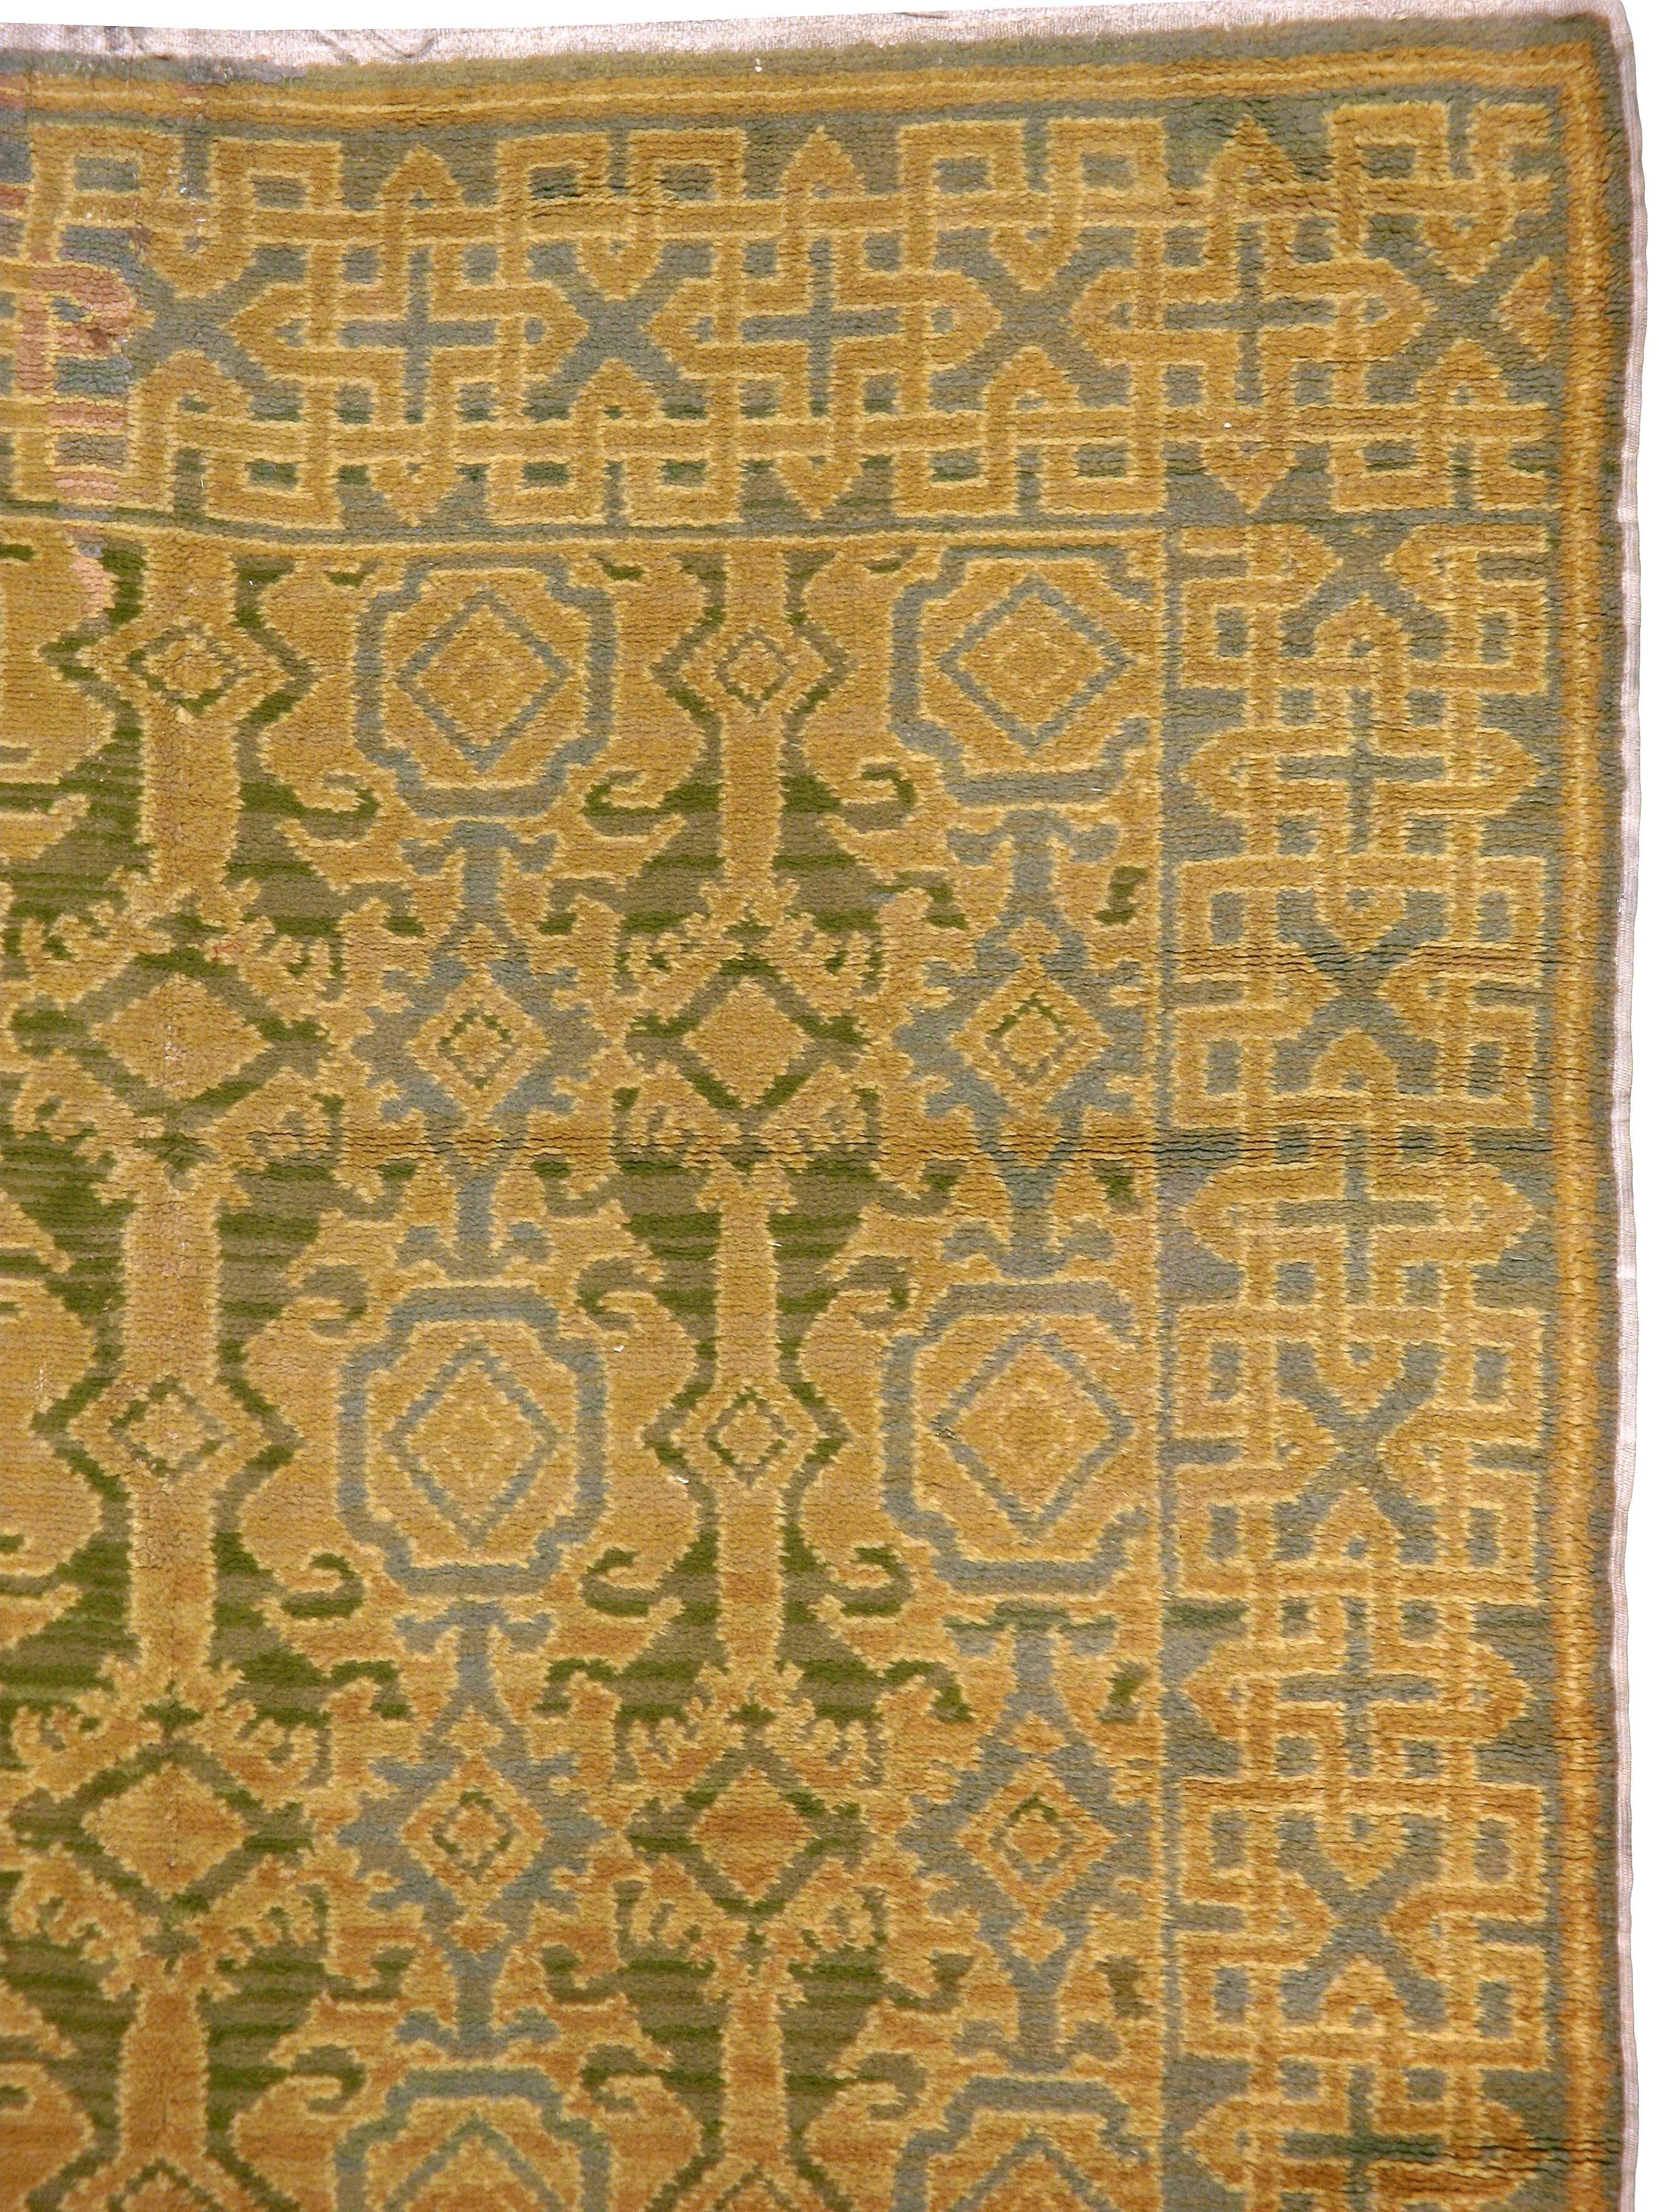 cuenca carpet